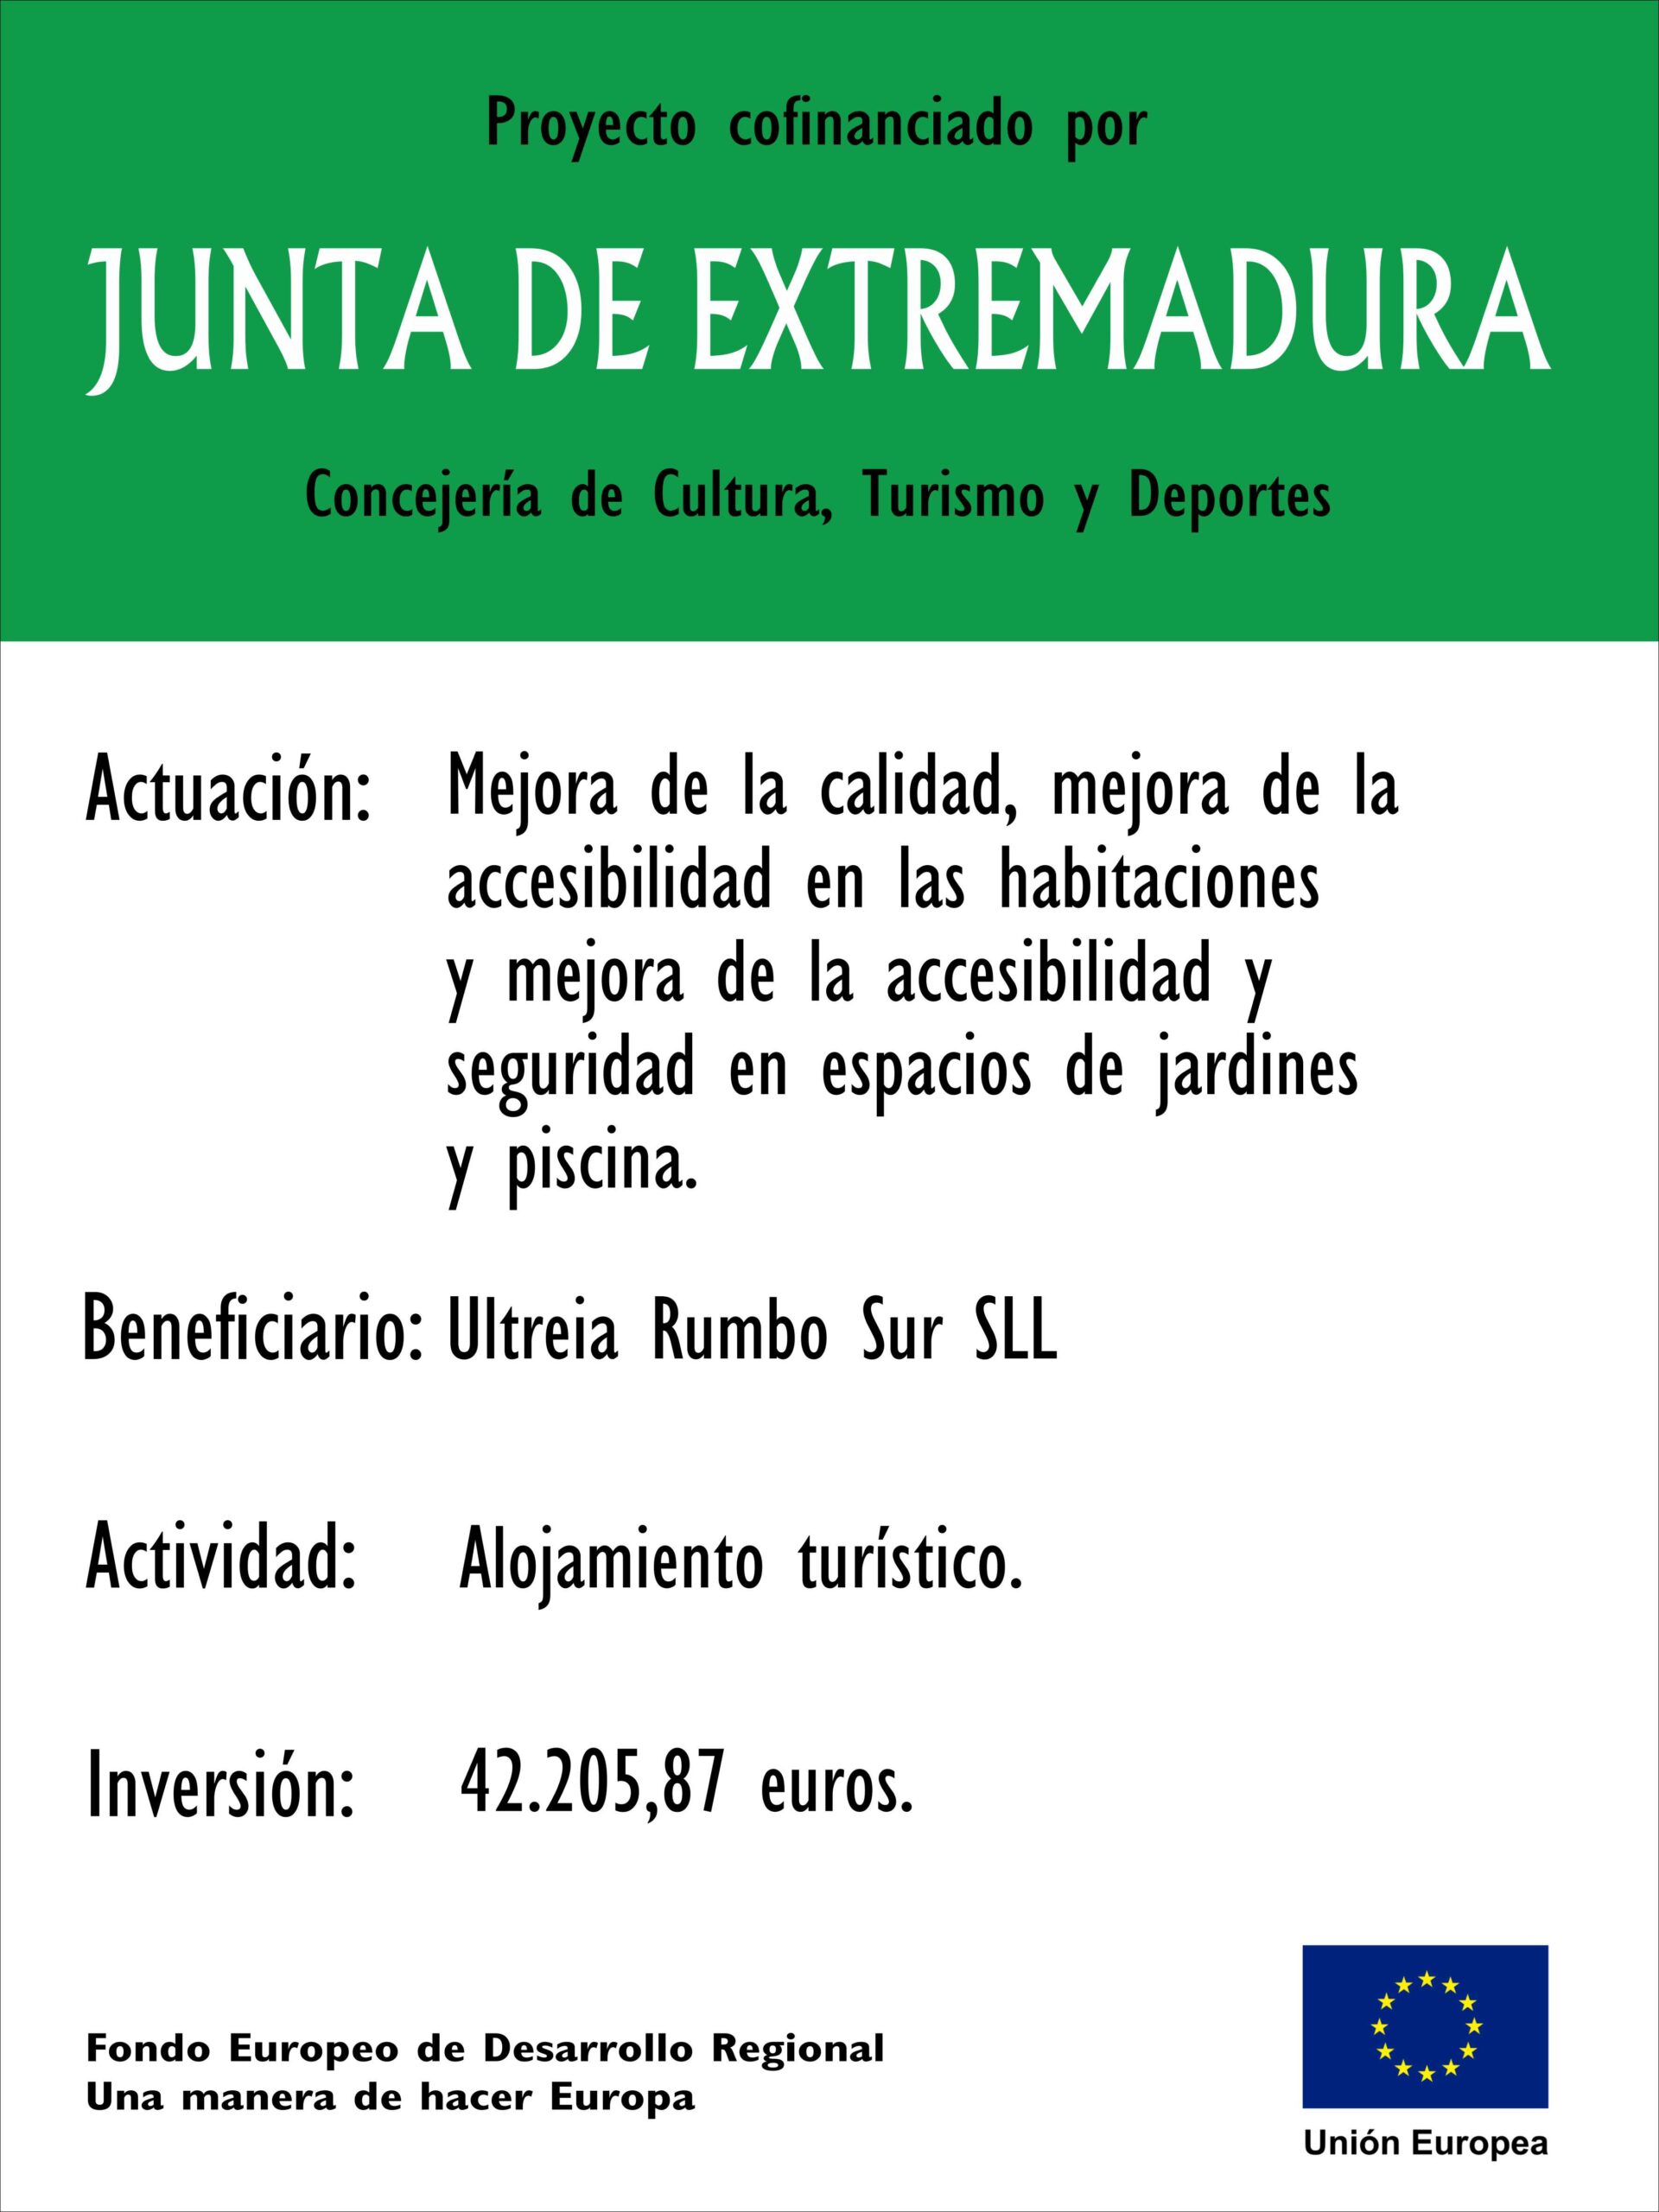 Proyecto Cofinanciado CR Junta de Extremadura 2023 Mejora de calidad.